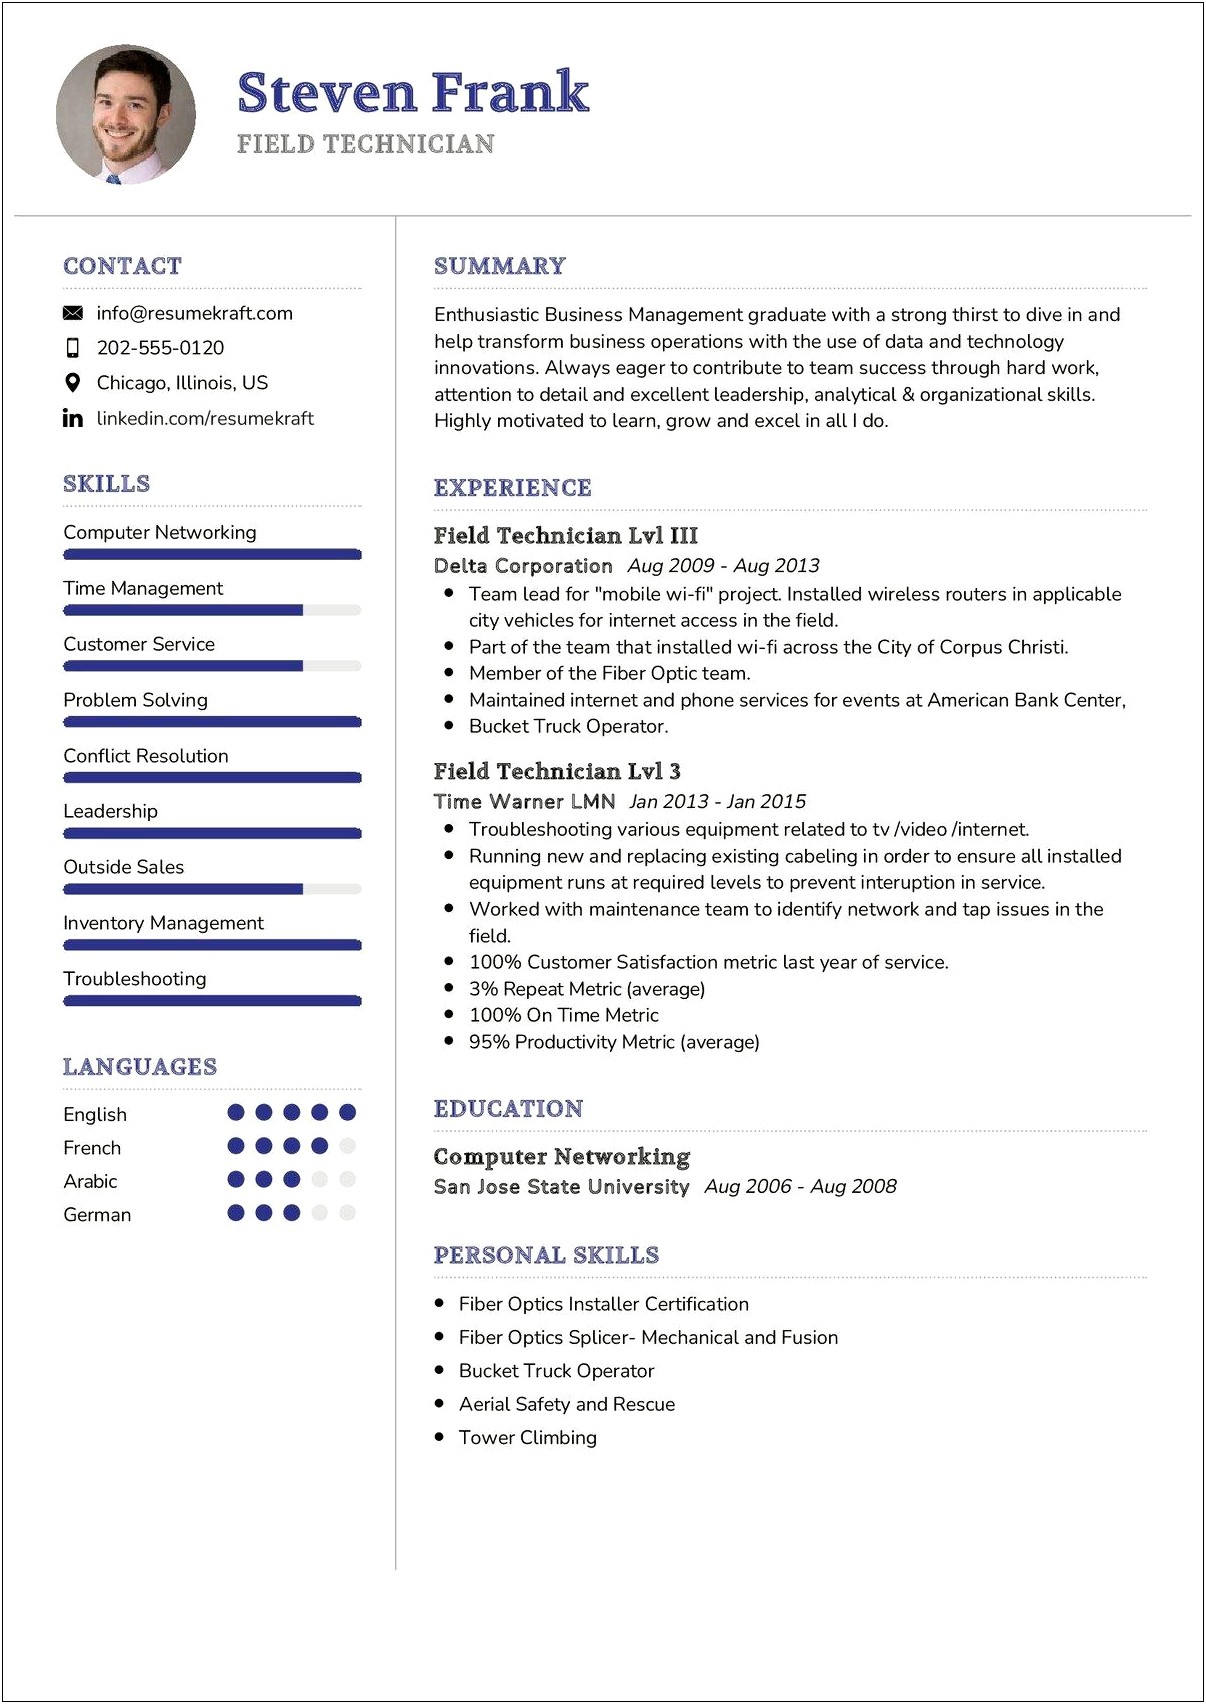 Sample Resume For Fiber Optic Splicer